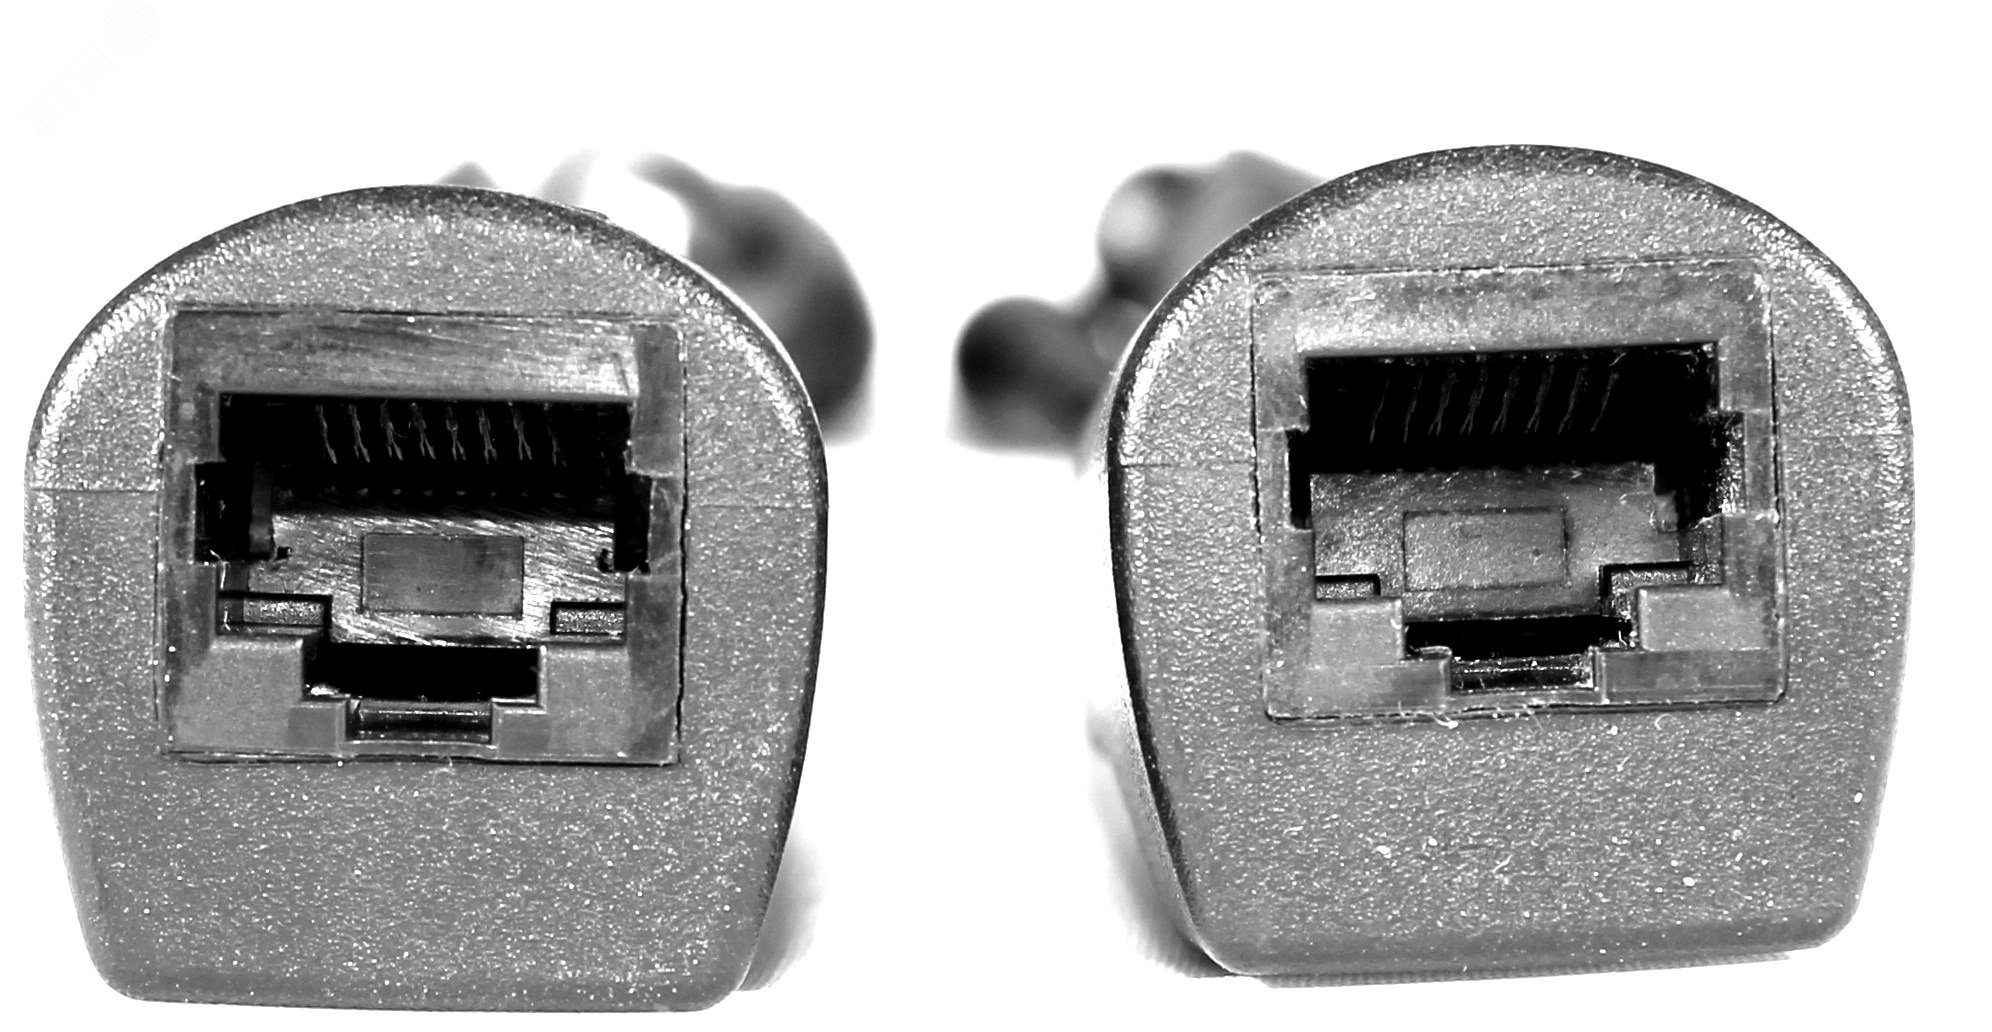 Комплект пассивный (инжектор + сплиттер) для передачи PoE по кабелю Cat 5e. PPK-11 OSNOVO - превью 4